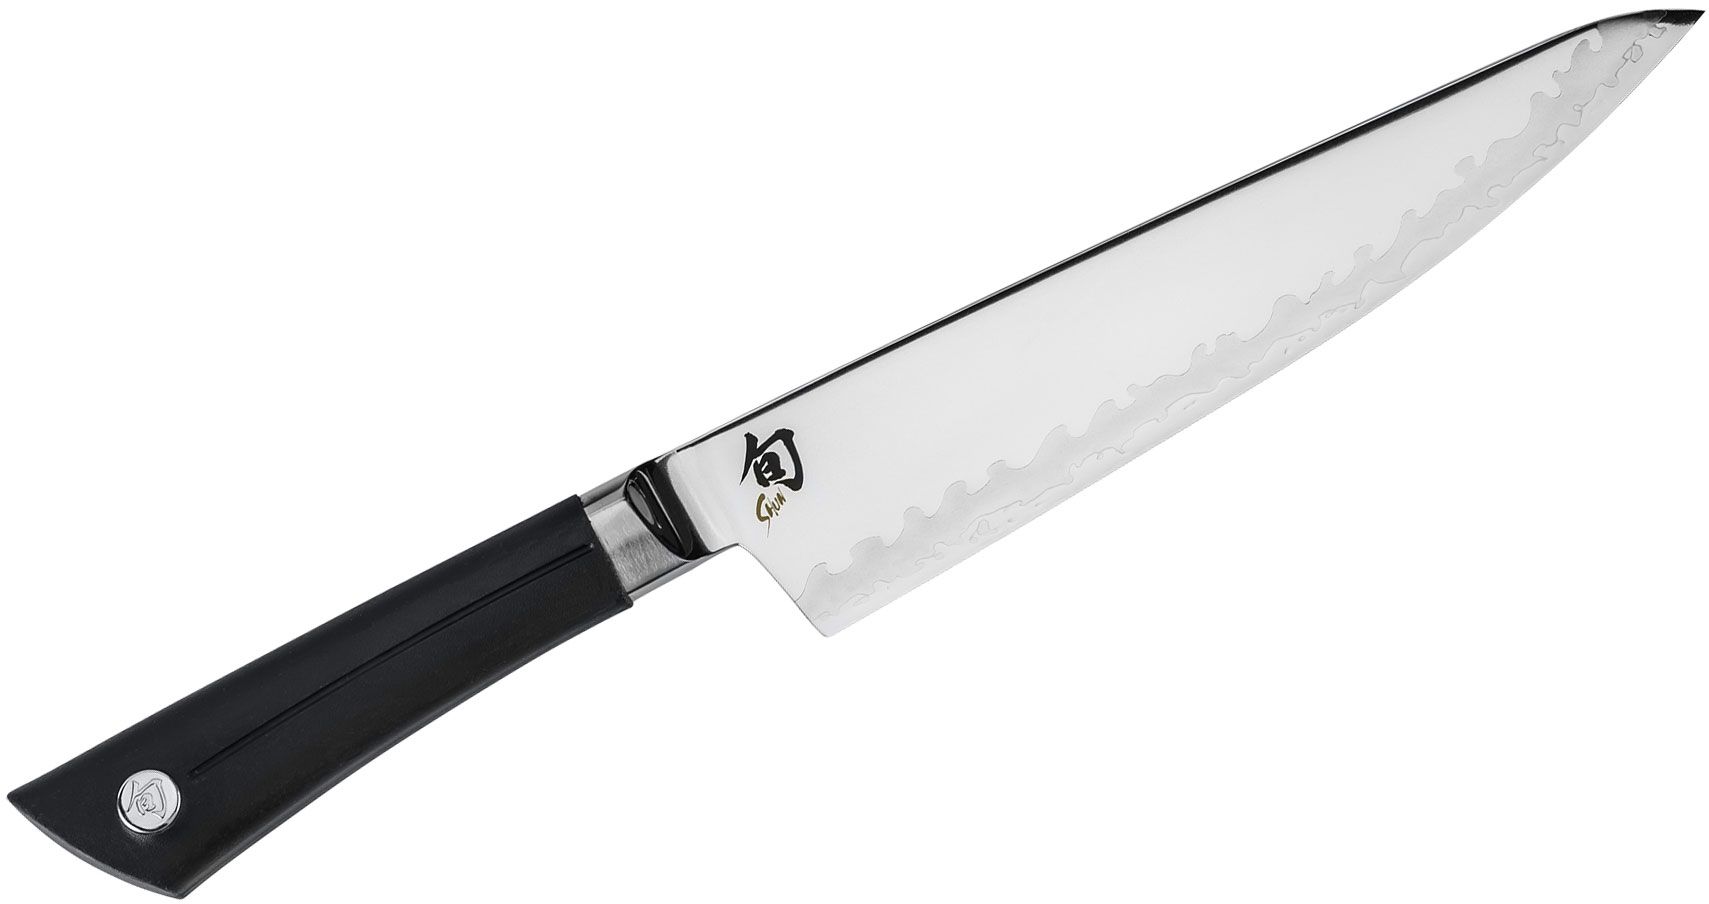 Shun Sora 8 Chef's Knife at Swiss Knife Shop